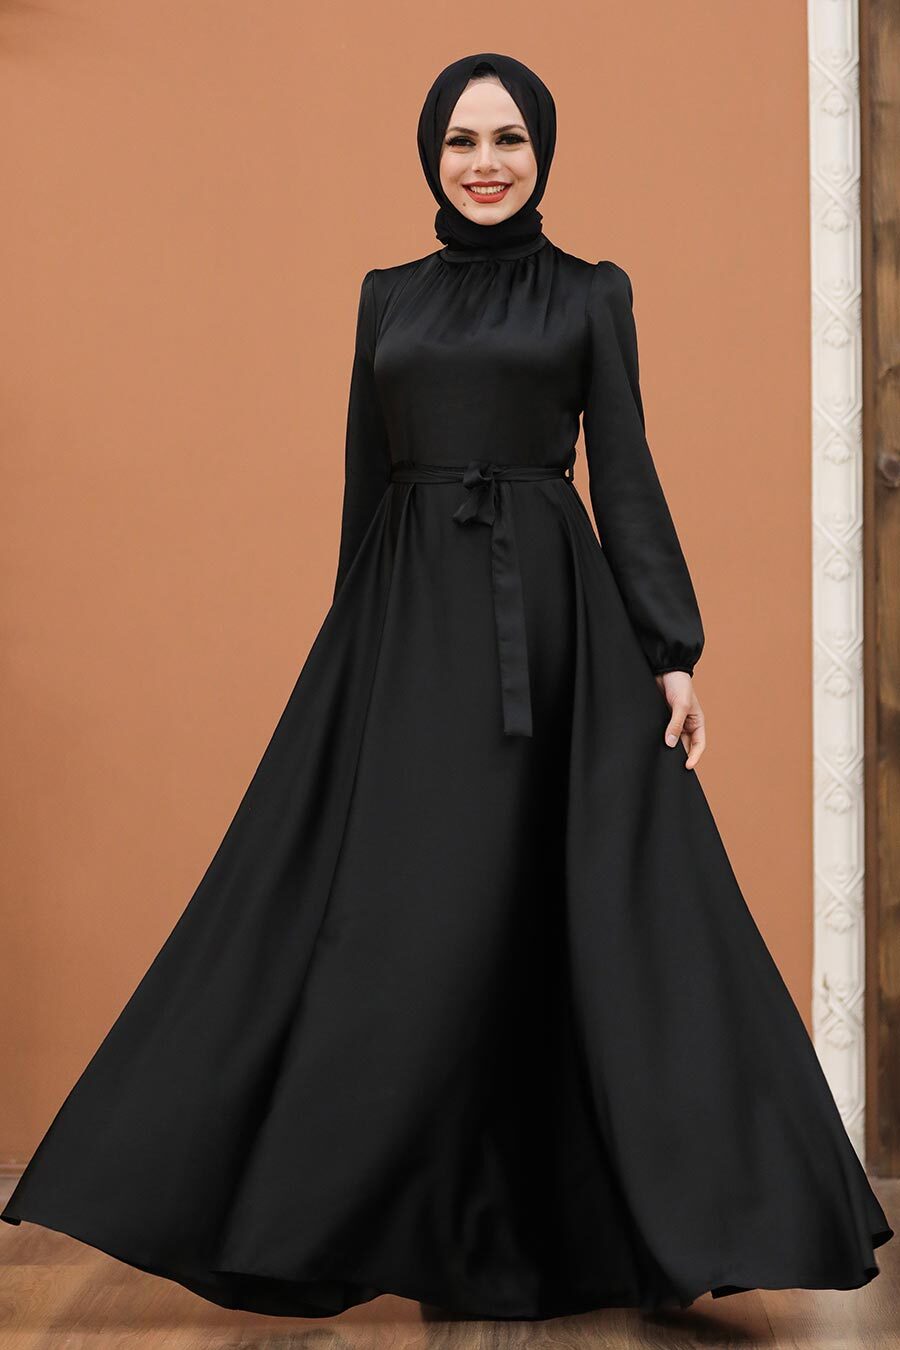 Tesettürlü Abiye Elbise - Balon Kol Siyah Tesettür Saten Abiye Elbise 25131S